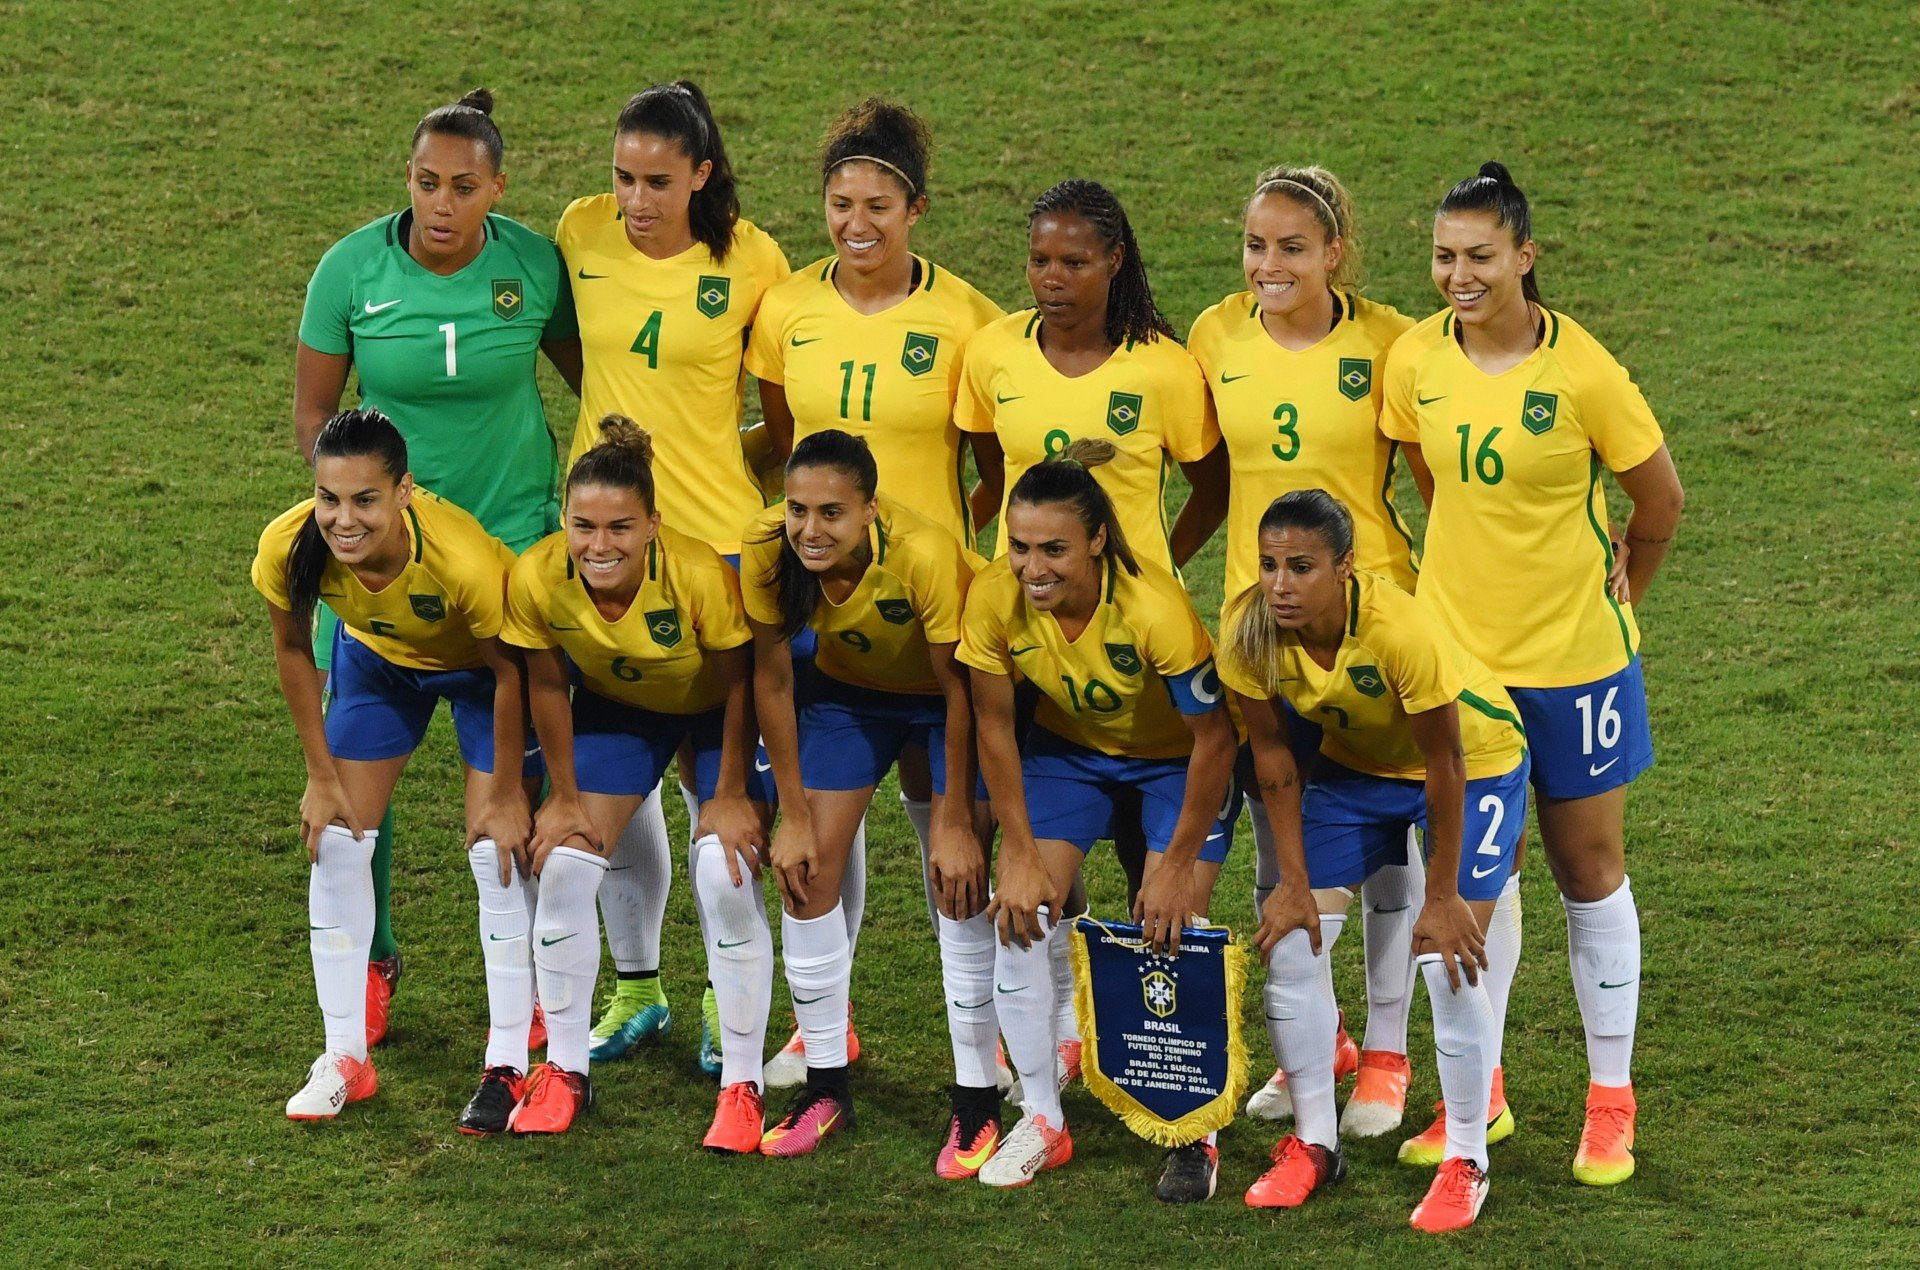 Qual o resultado do jogo da seleção brasileira feminino hoje?